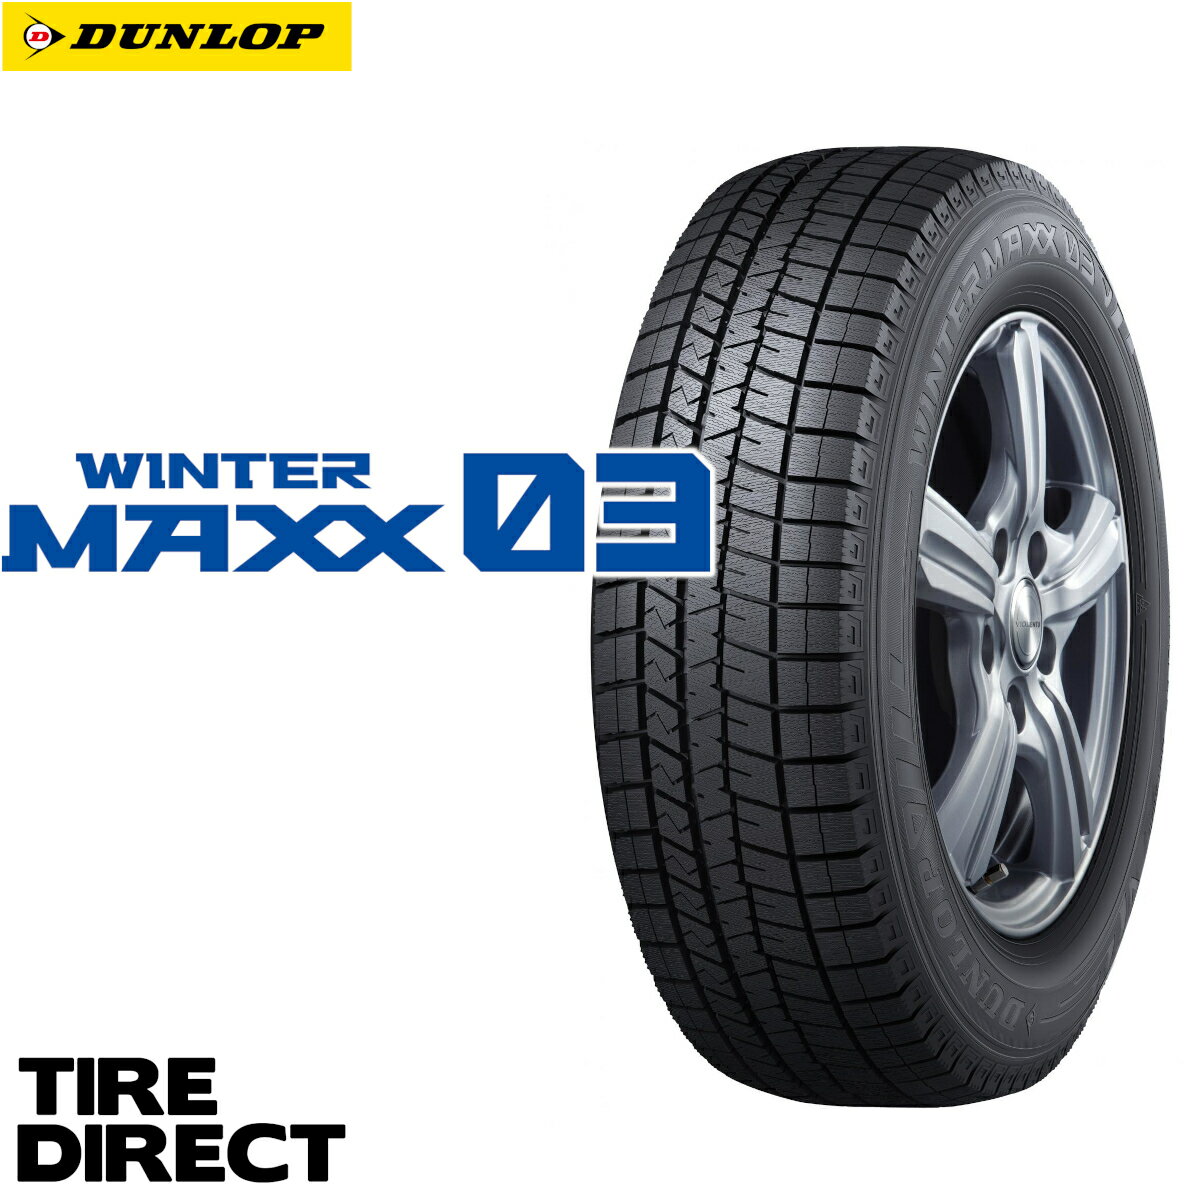 新品 ダンロップ ウインターマックス WM03 225/50R18 95Q DUNLOP WINTER MAXX ウィンターマックス 225/50-18 冬タイヤ スタッドレスタイヤ